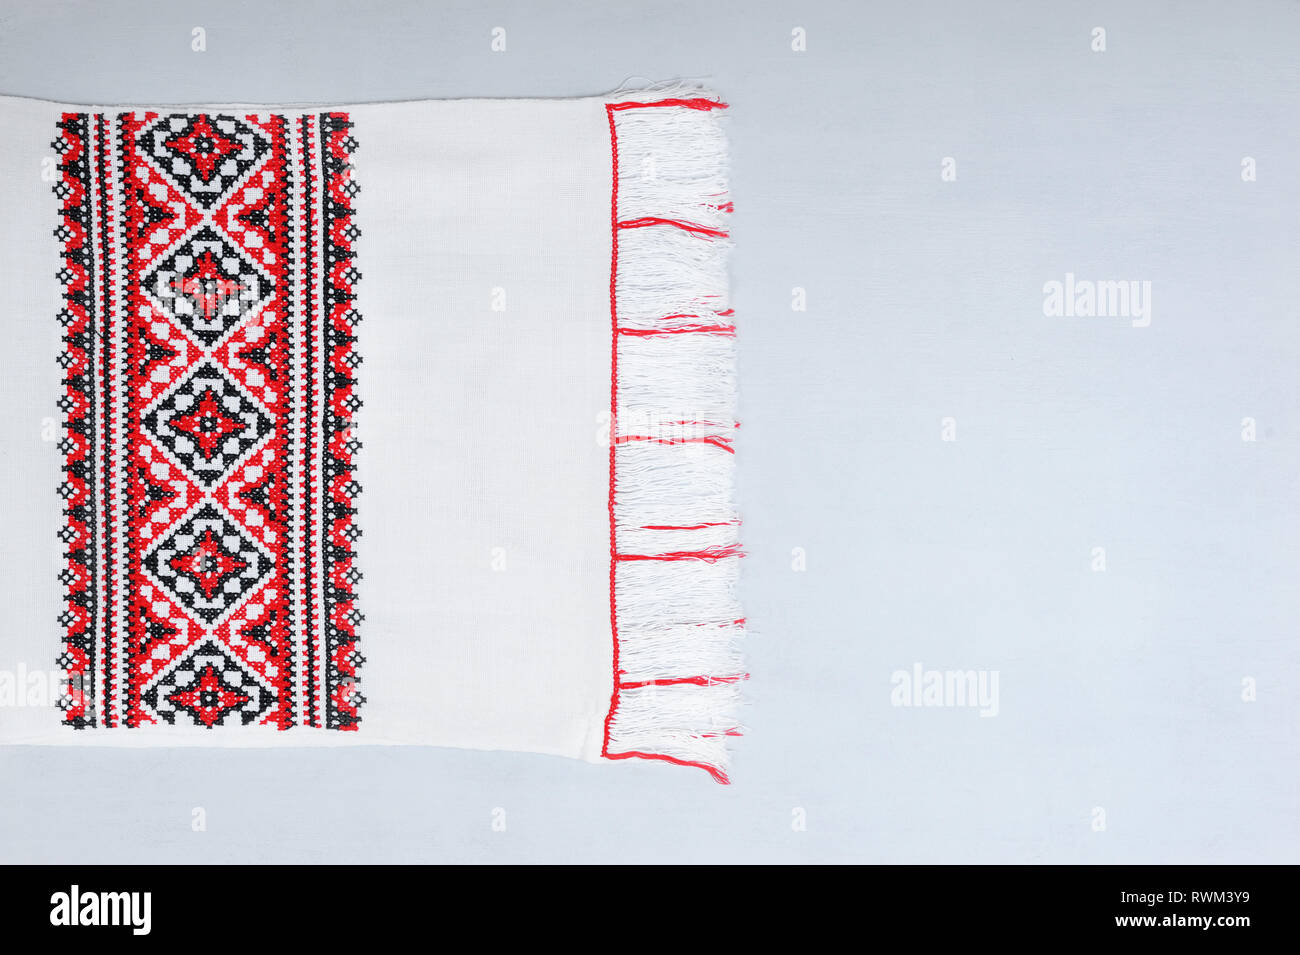 Asciugamano ucraino a mano è realizzata in vista dei più antichi canoni di rendere gli asciugamani. Motivi ricamati di asciugamani riflettono i fondamenti della prosperità, Foto Stock